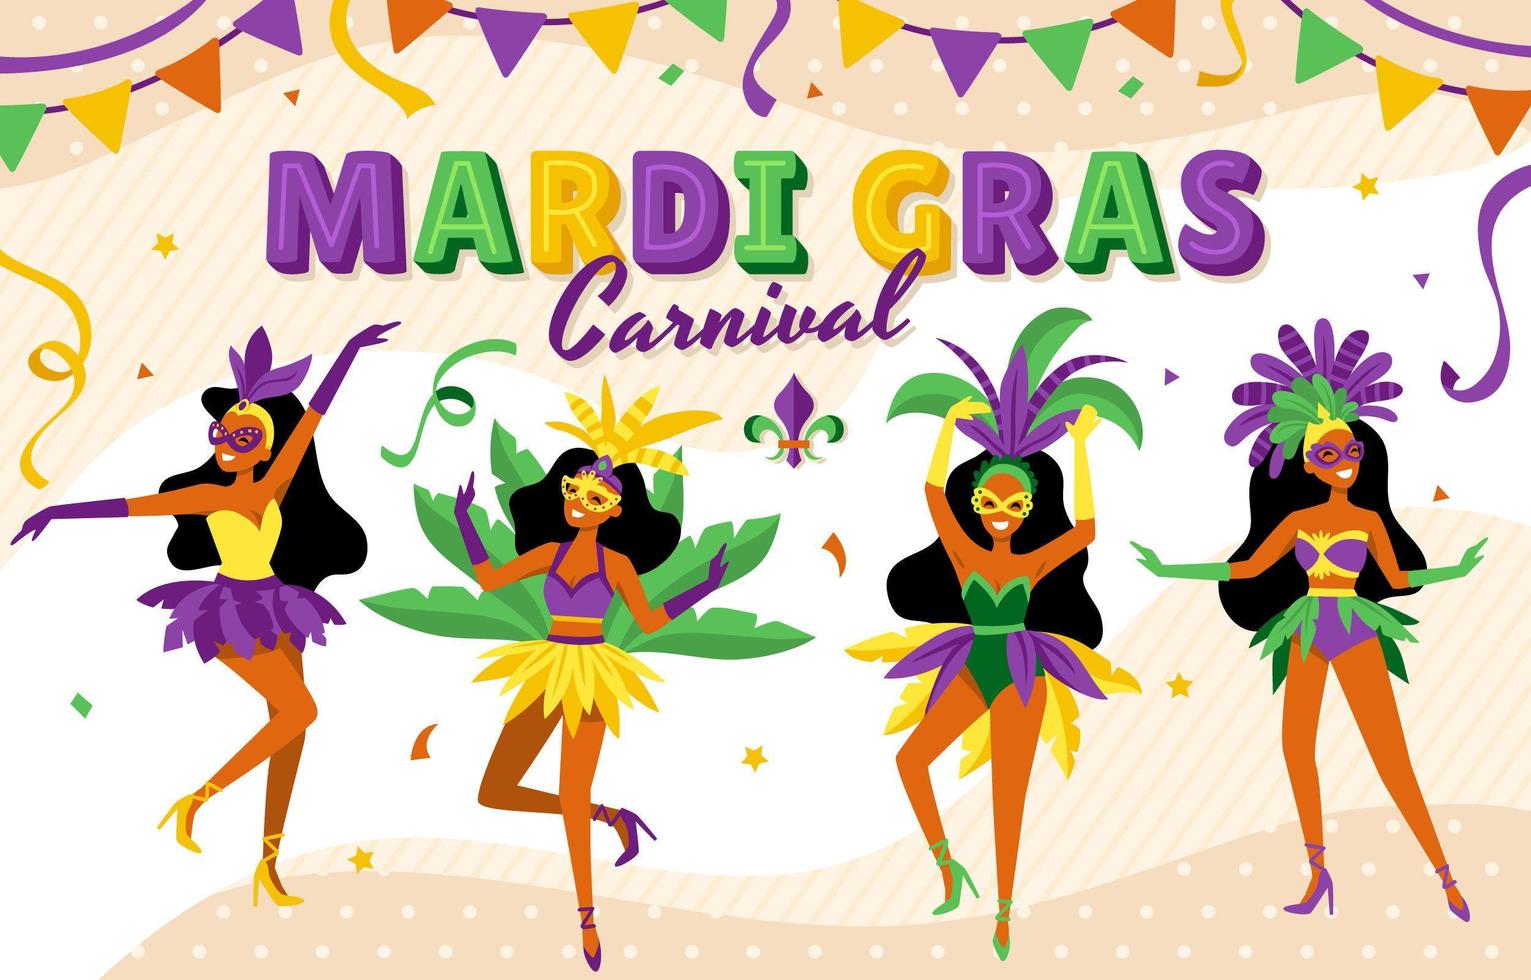 Mardi Gras Carnival Celebration vector